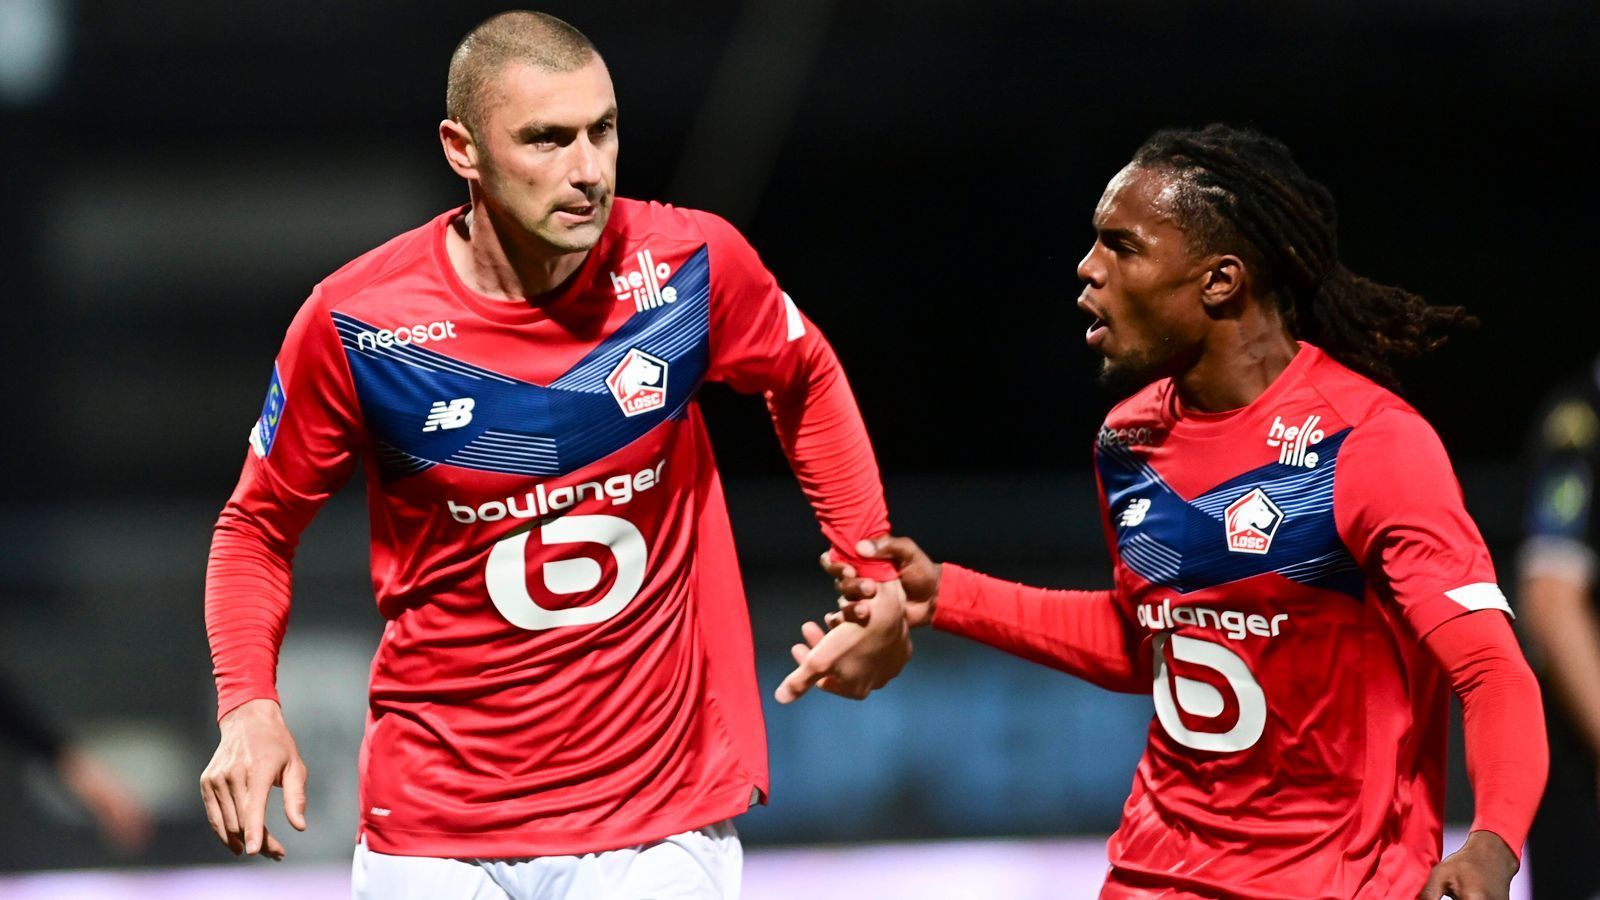 
                <strong>OSC Lille</strong><br>
                Die französische Ligue 1 hat 2021 einen etwas überraschenden Meister mit OSC Lille hervorgebracht. Die Mannschaft um den früheren Bayern-Star Renato Sanches (re.) und Torjäger Burak Yilmaz (li.) setzte sich im engen Meister-Rennen mit 83 Punkten einen Zähler vor Paris St. Germain durch. Am abschließenden Spieltag fuhr Lille einen 2:1-Sieg bei Angers ein, was letztlich den Titelgewinn bedeutete. Für Lille ist es der fünfte Meistertitel der Vereinsgeschichte und der erste seit 2011. 
              